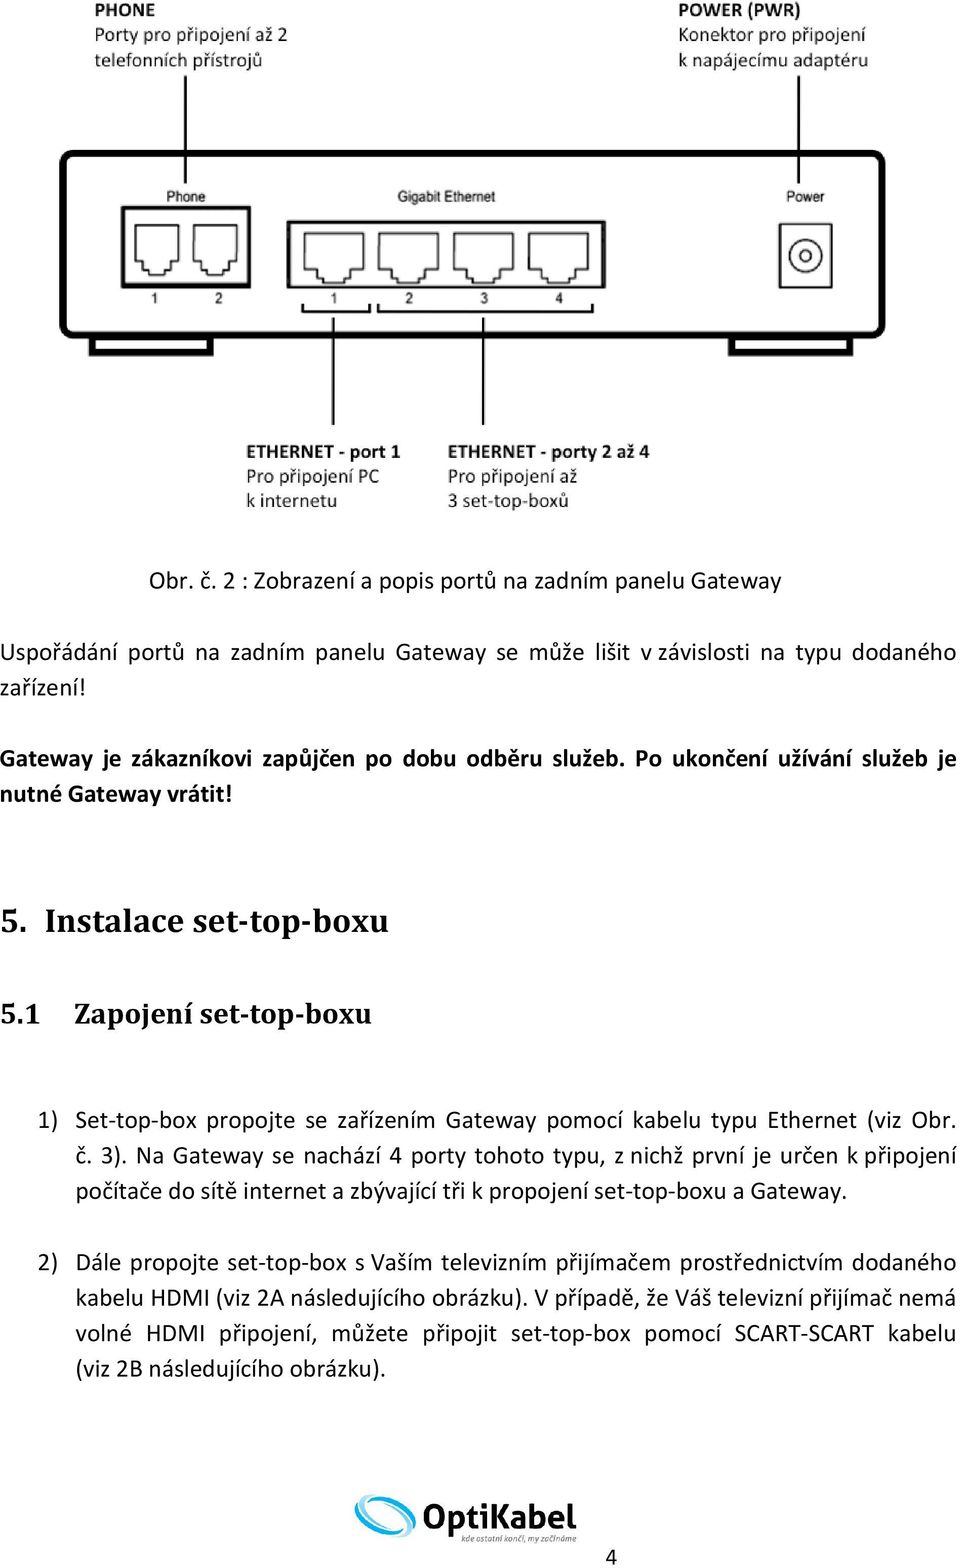 1 Zapojení set-top-boxu 1) Set-top-box propojte se zařízením Gateway pomocí kabelu typu Ethernet (viz Obr. č. 3).